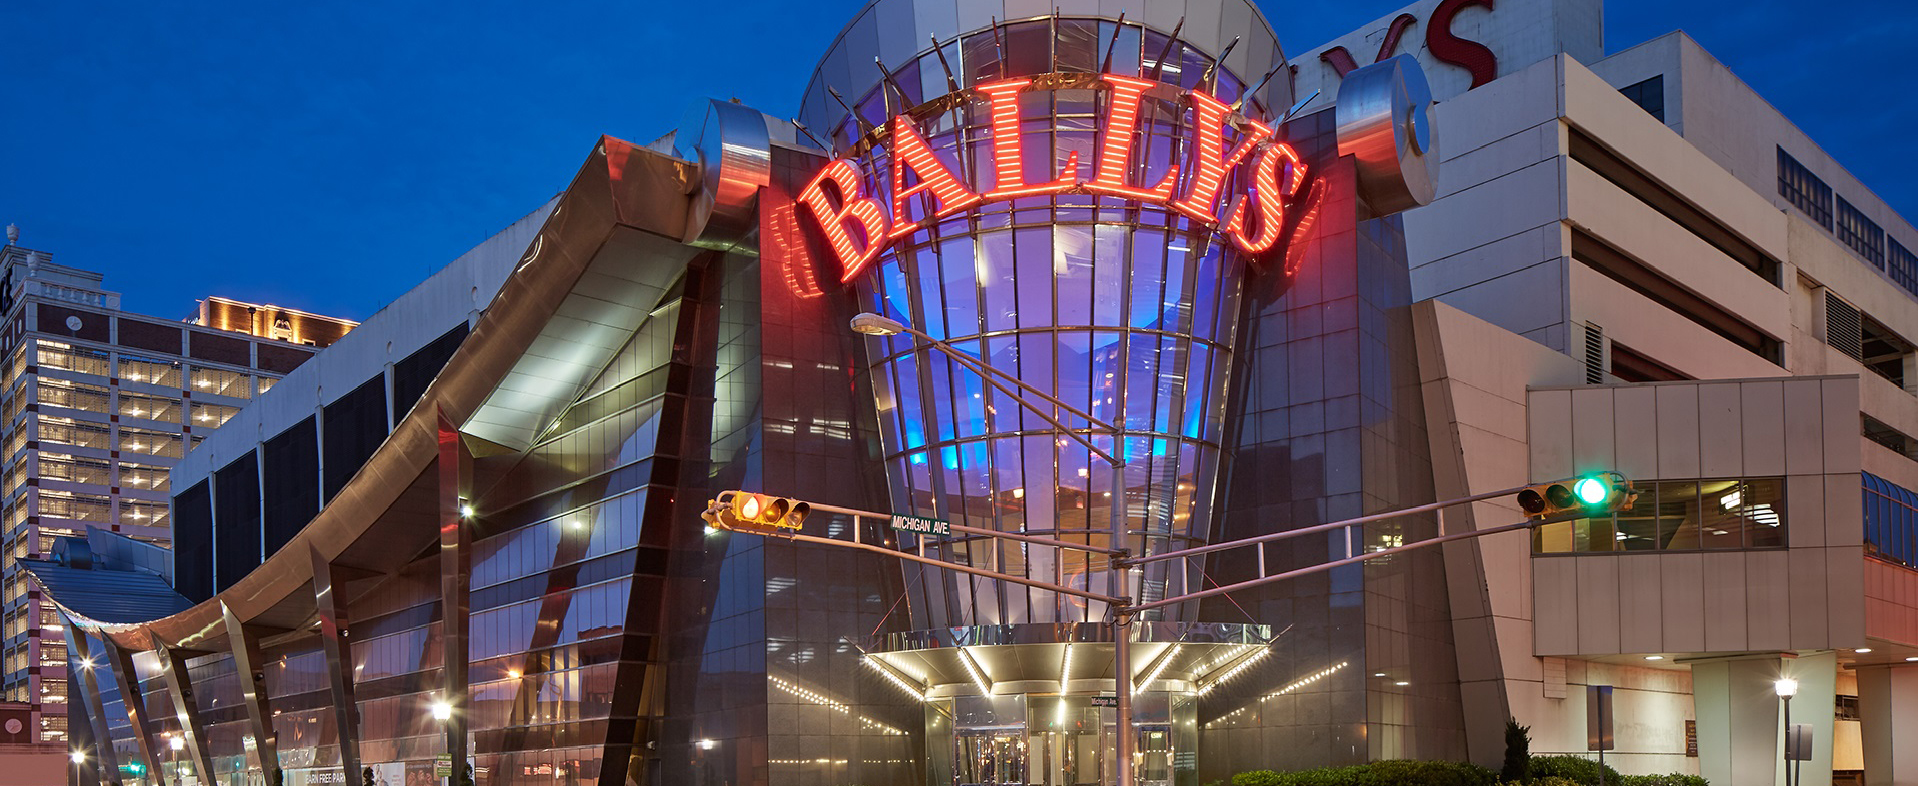 Bally's Hotel Atlantic City